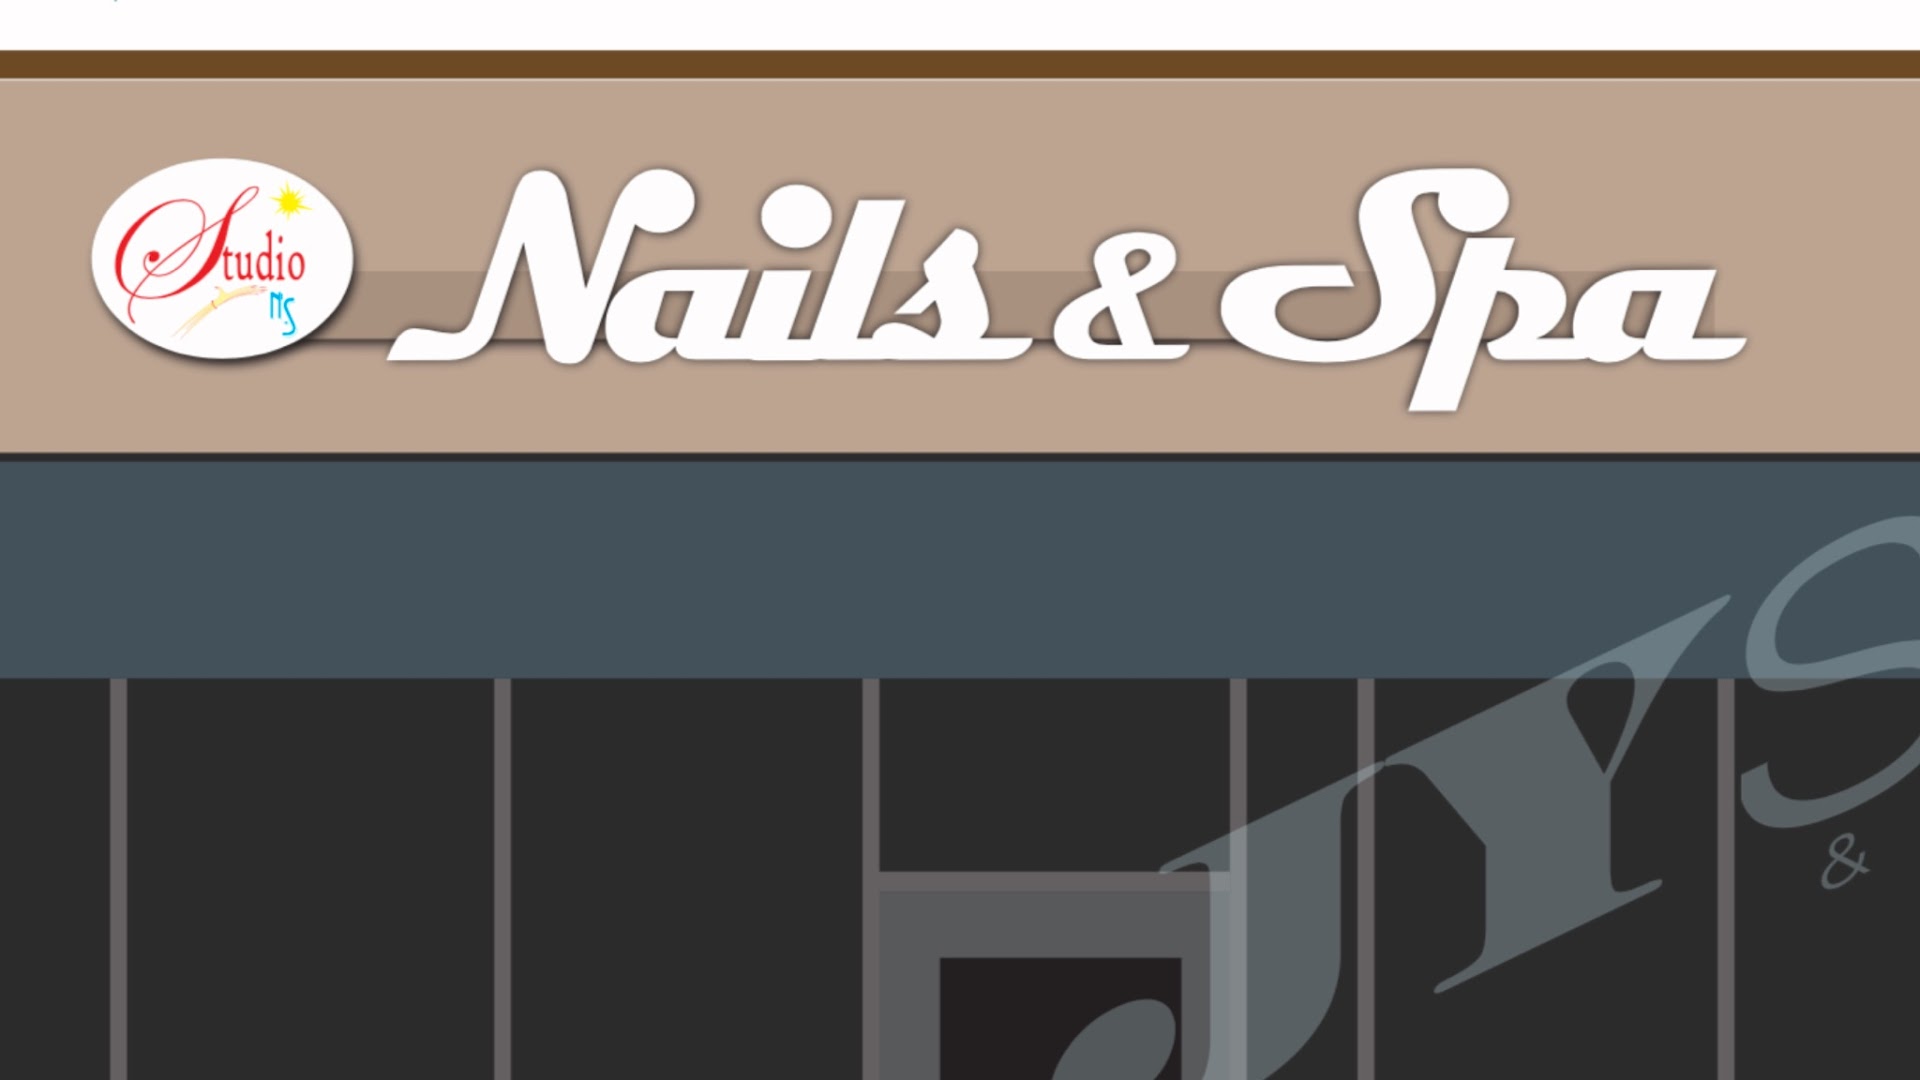 Studio Nails & Spa